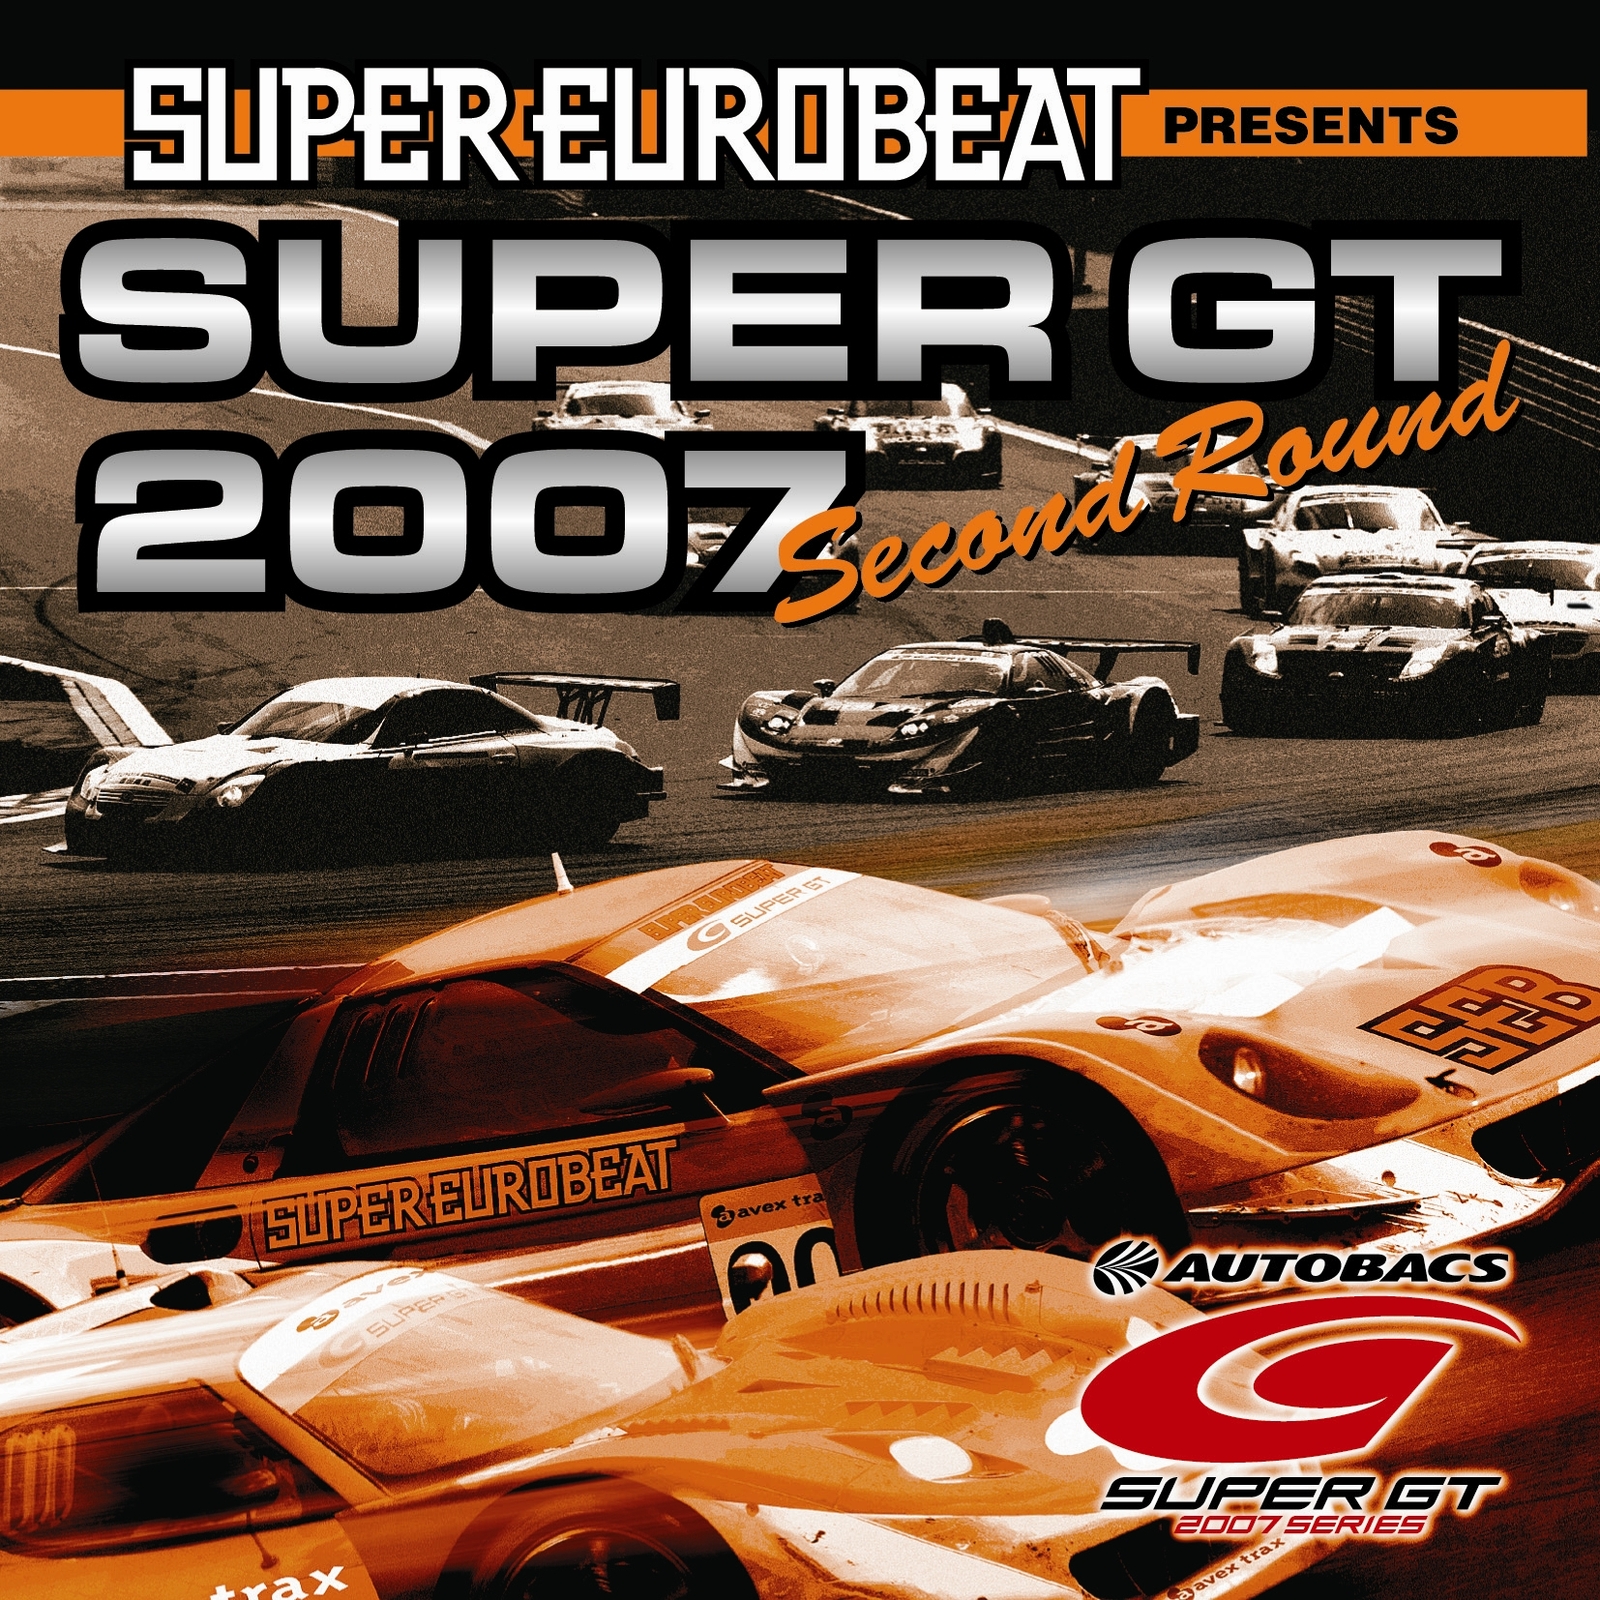 Super Eurobeat Presents Super GT 2007 ~Second Round~ | Eurobeat 